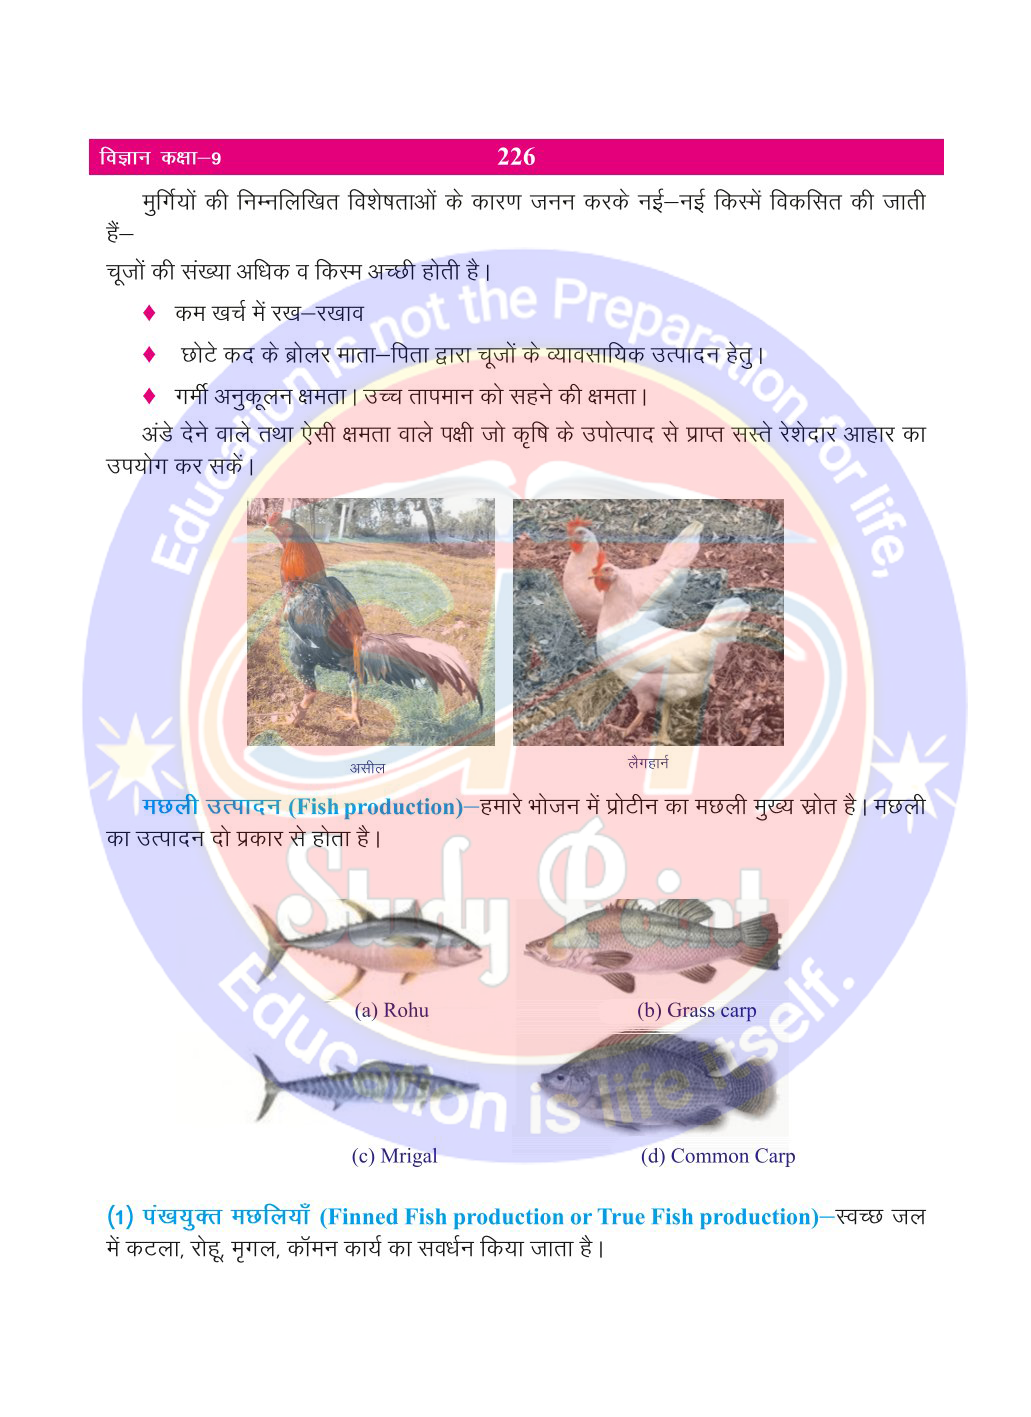 Bihar Board Class 9th Biology | Improving Food Resources | Class 9 Biology Rivision Notes PDF | खाद्य संसाधनों में सुधर | बिहार बोर्ड क्लास 9वीं जीवविज्ञान नोट्स | कक्षा 9 जीवविज्ञान हिंदी में नोट्स